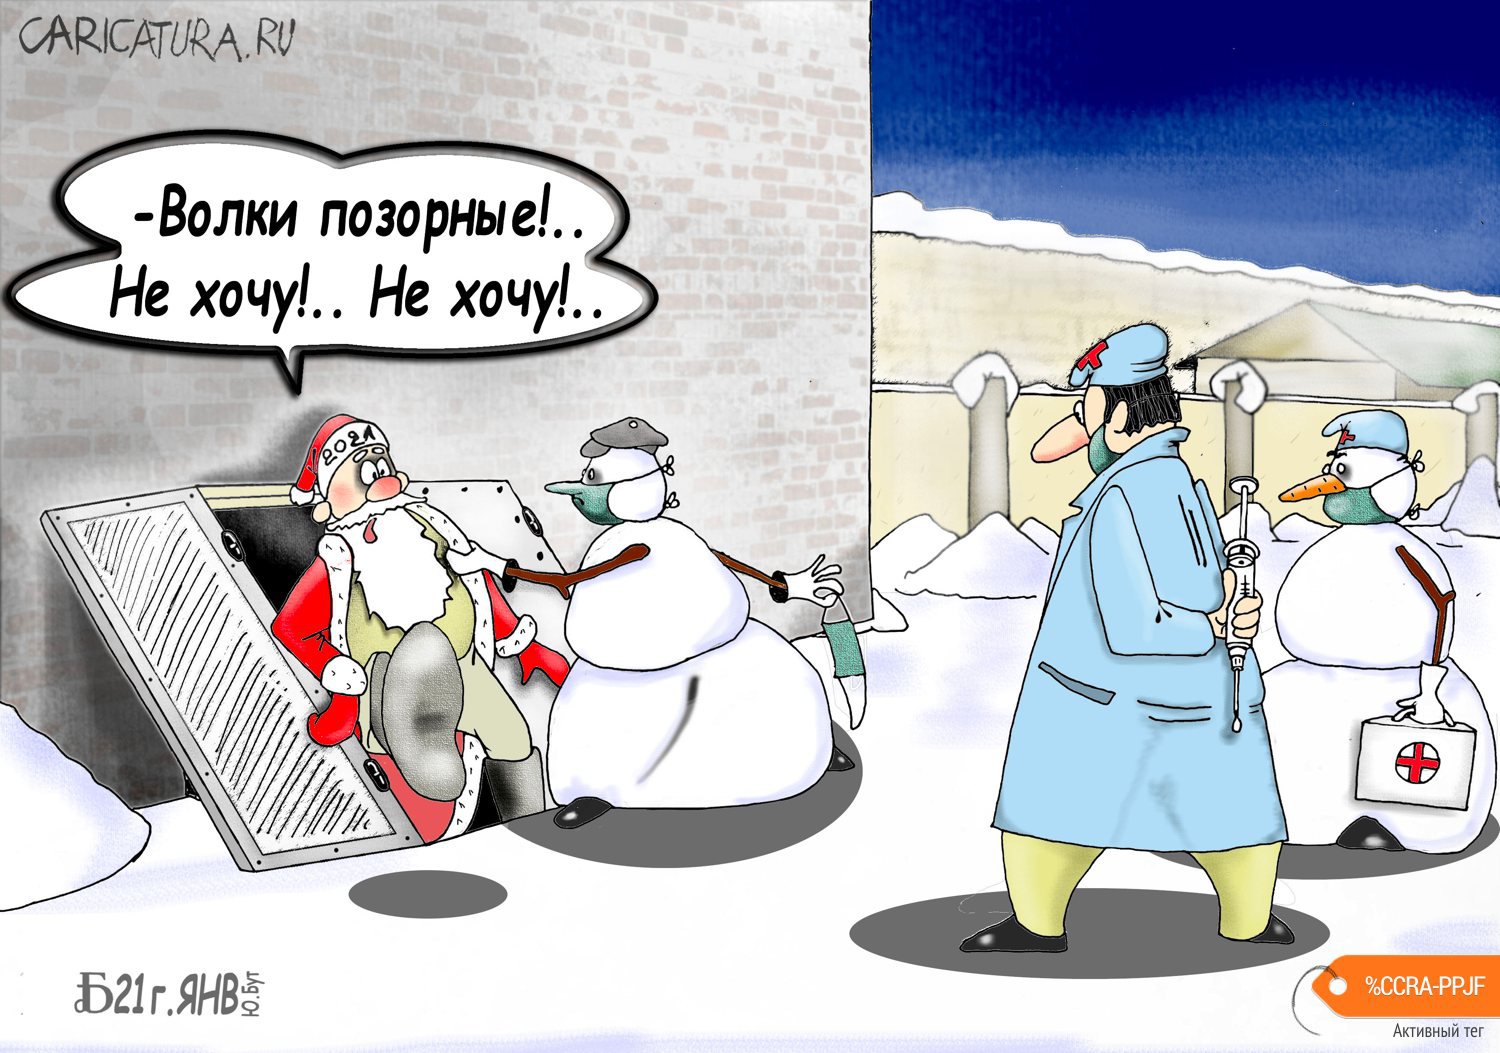 Карикатура "Про место и волков", Борис Демин